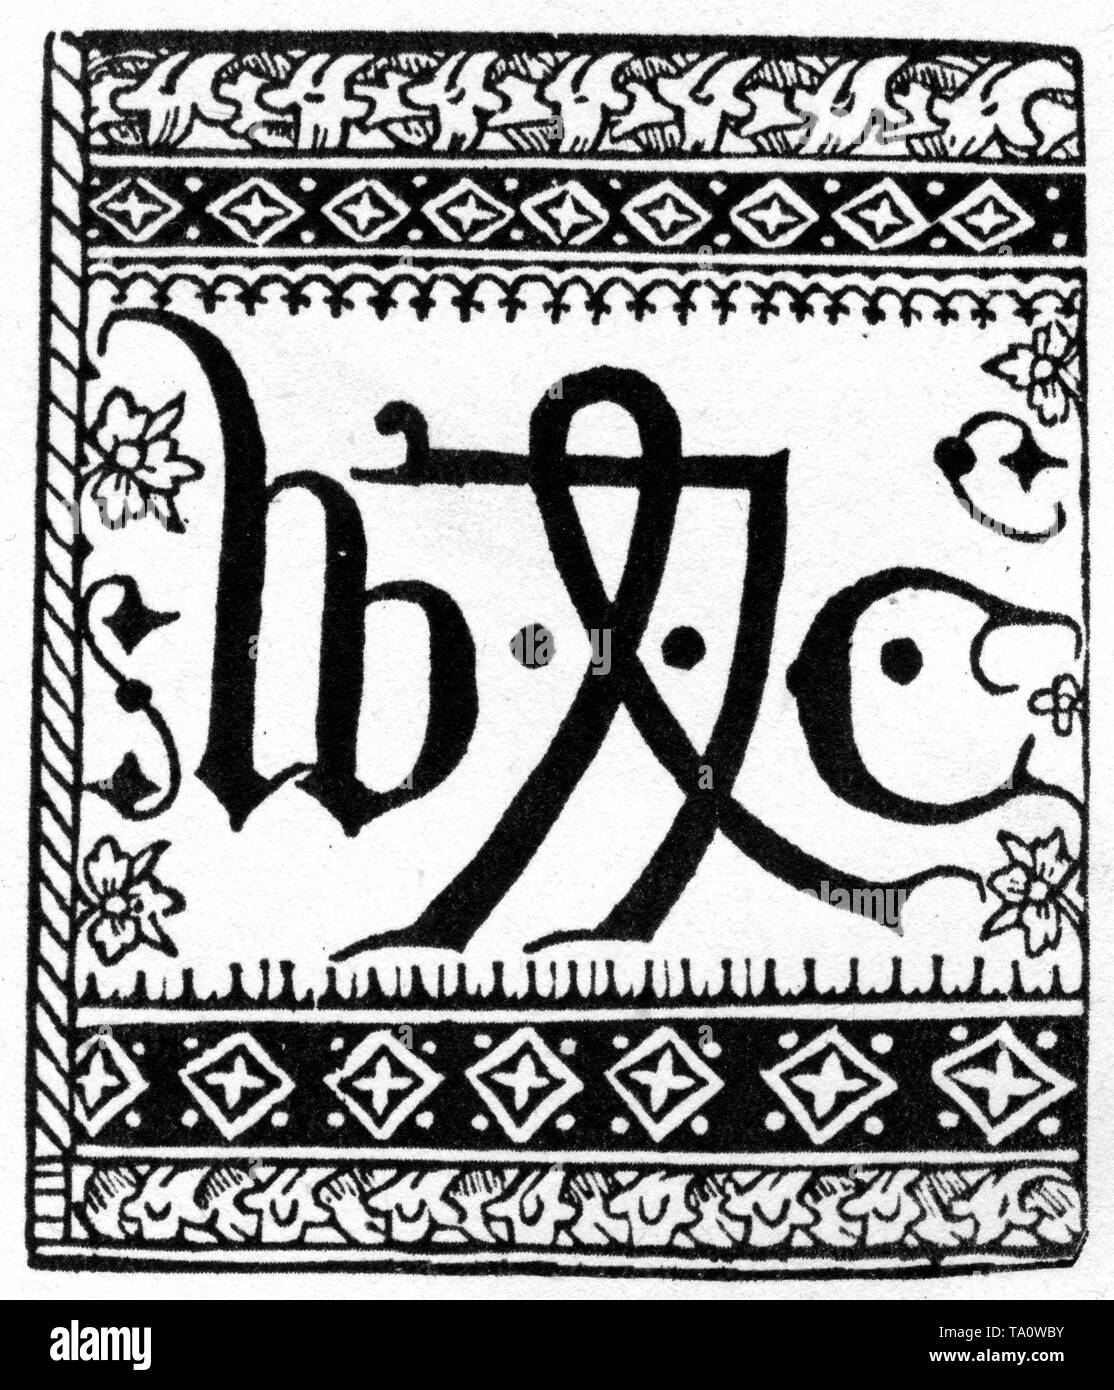 Marke oder Gerät des Druckers von Caxton, 1478. Von William Caxton (c1415-1422-c1492). Caxton war ein englischer Kaufmann, Diplomat, Schriftsteller und Drucker. Caxton gilt als erster Engländer, der als Drucker arbeitet und als erster eine Druckmaschine in England eingeführt hat. Stockfoto